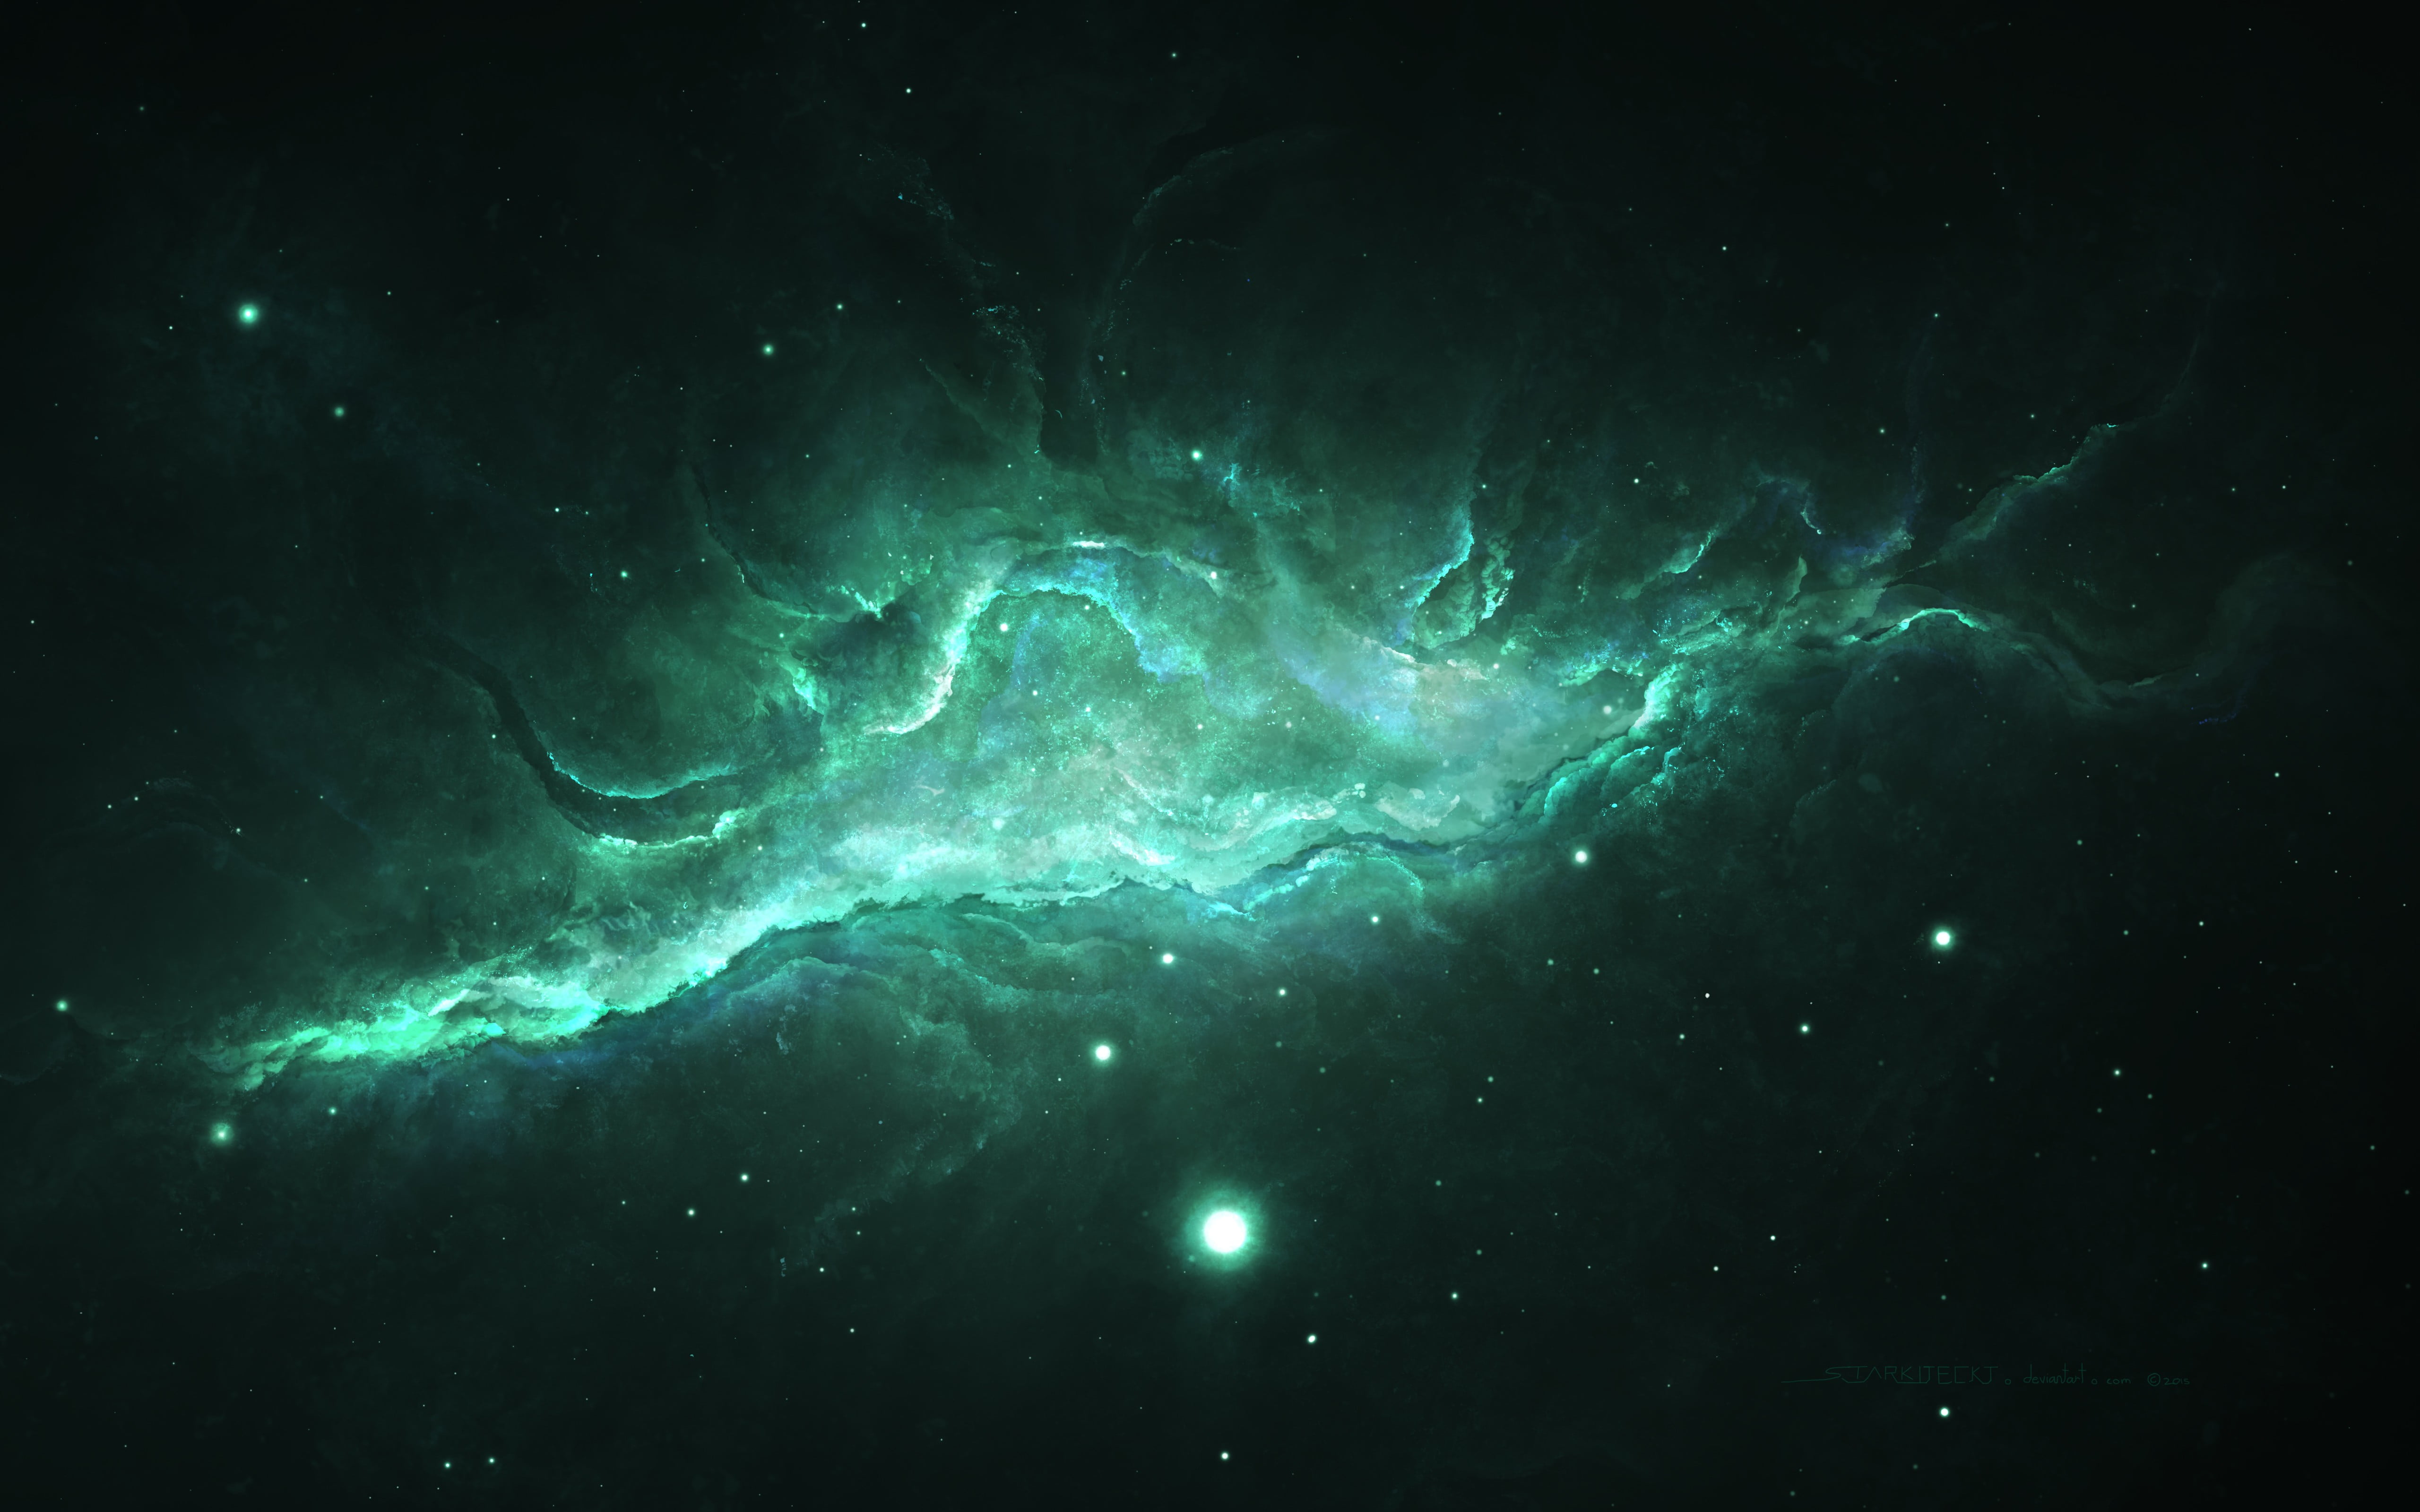 Thiên hà xanh sống động - một cuộc phiêu lưu tuyệt vời đưa ta đến những vùng không gian xa xôi, nơi chứa đựng những bí mật to lớn của vũ trụ. Cùng tận hưởng màu xanh đầy sức sống của thiên hà.